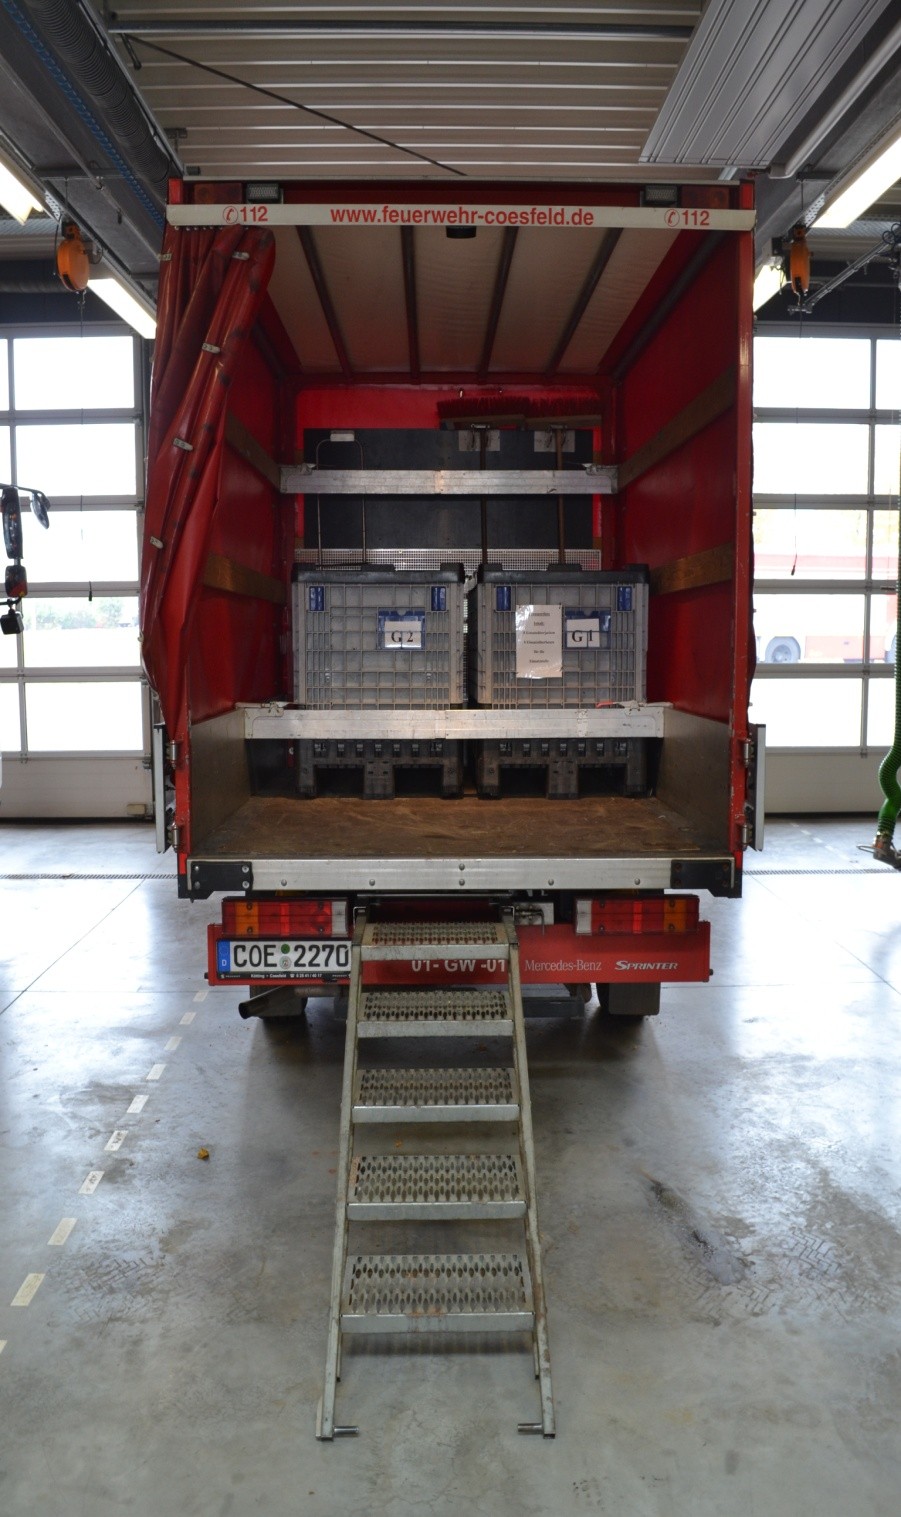 Ausrücken eines Gerätewagen Logistik bei jedem Einsatz mit frischer Ersatzkleidung Lagerungsboxen für Atemschutzgeräte, Wäschesäcke sowie zus. Kleinboxen, Müllbeutel.